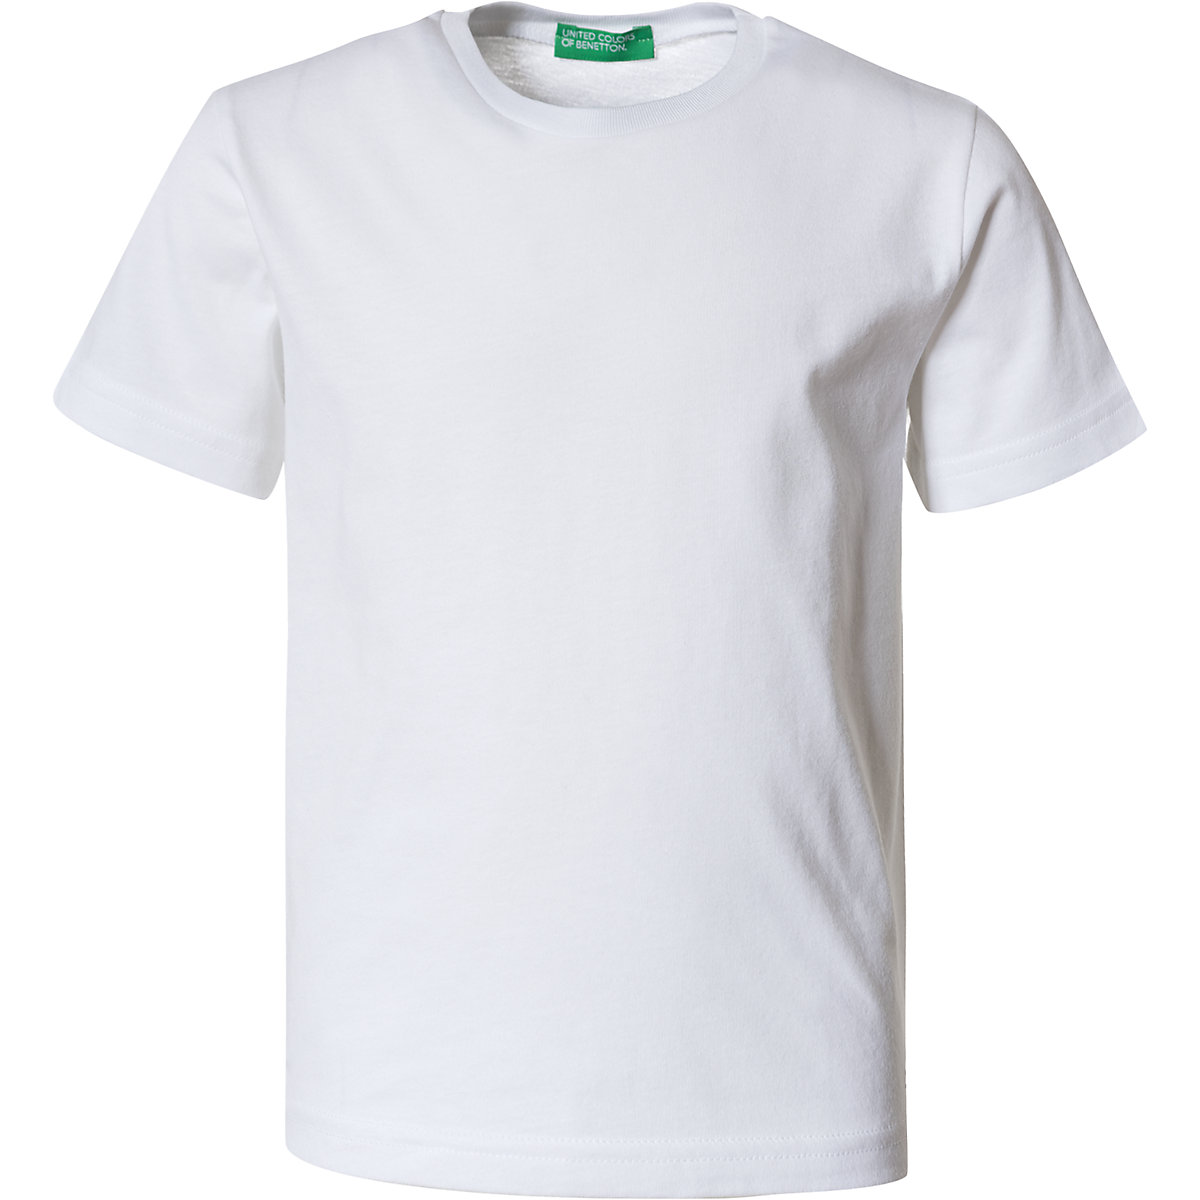 United Colors of Benetton T-Shirt für Jungen weiß